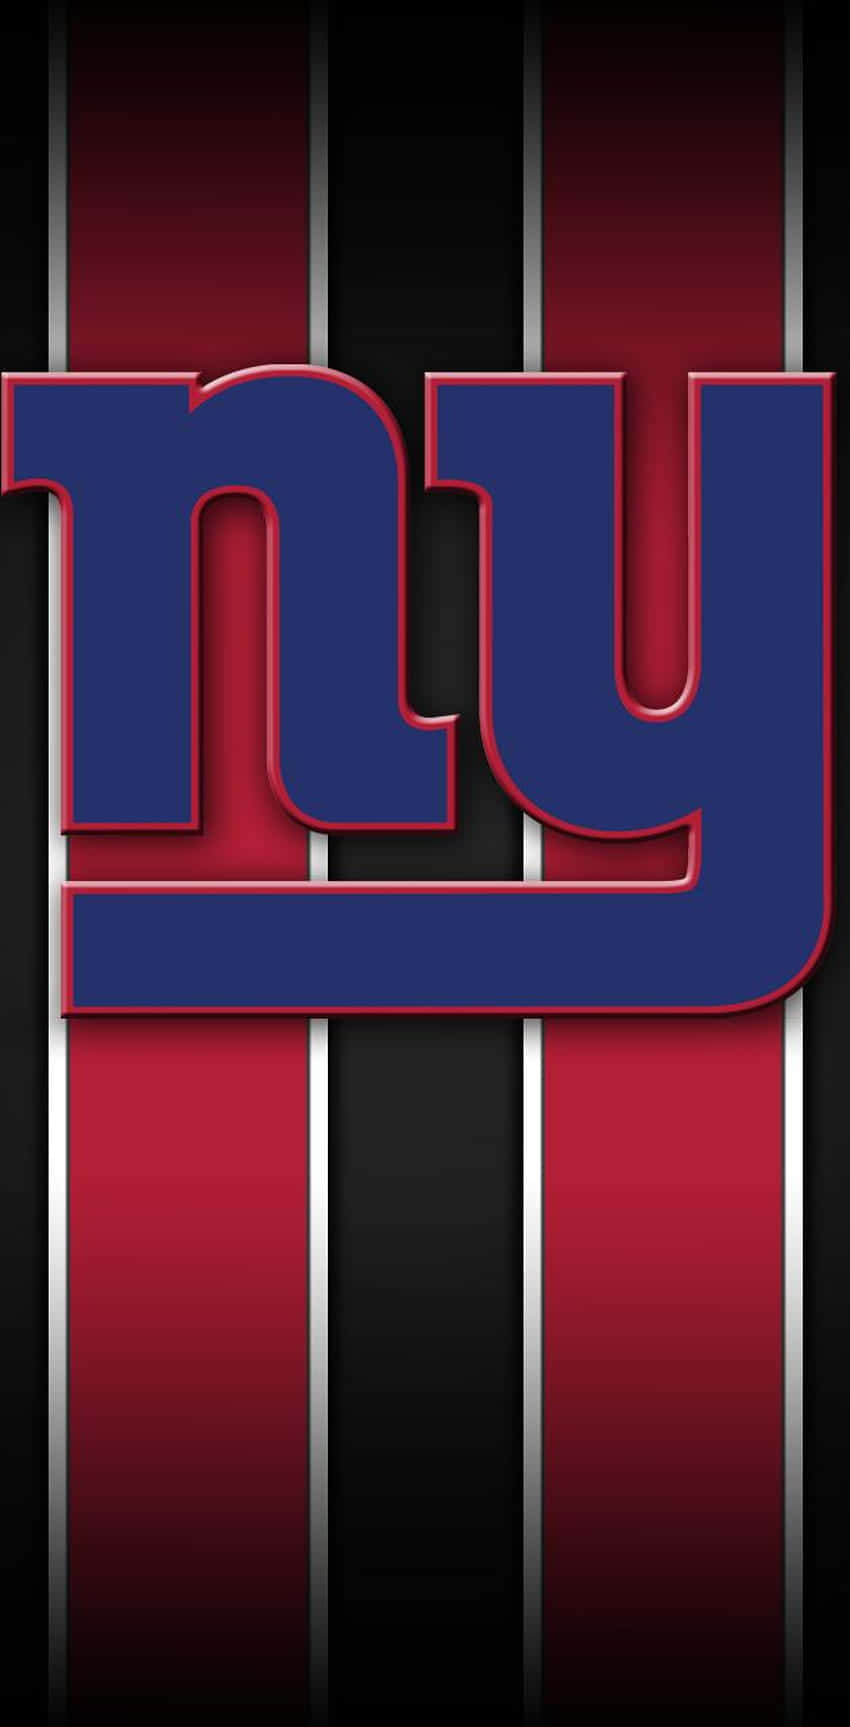 New York Giants Logo Design Wallpaper